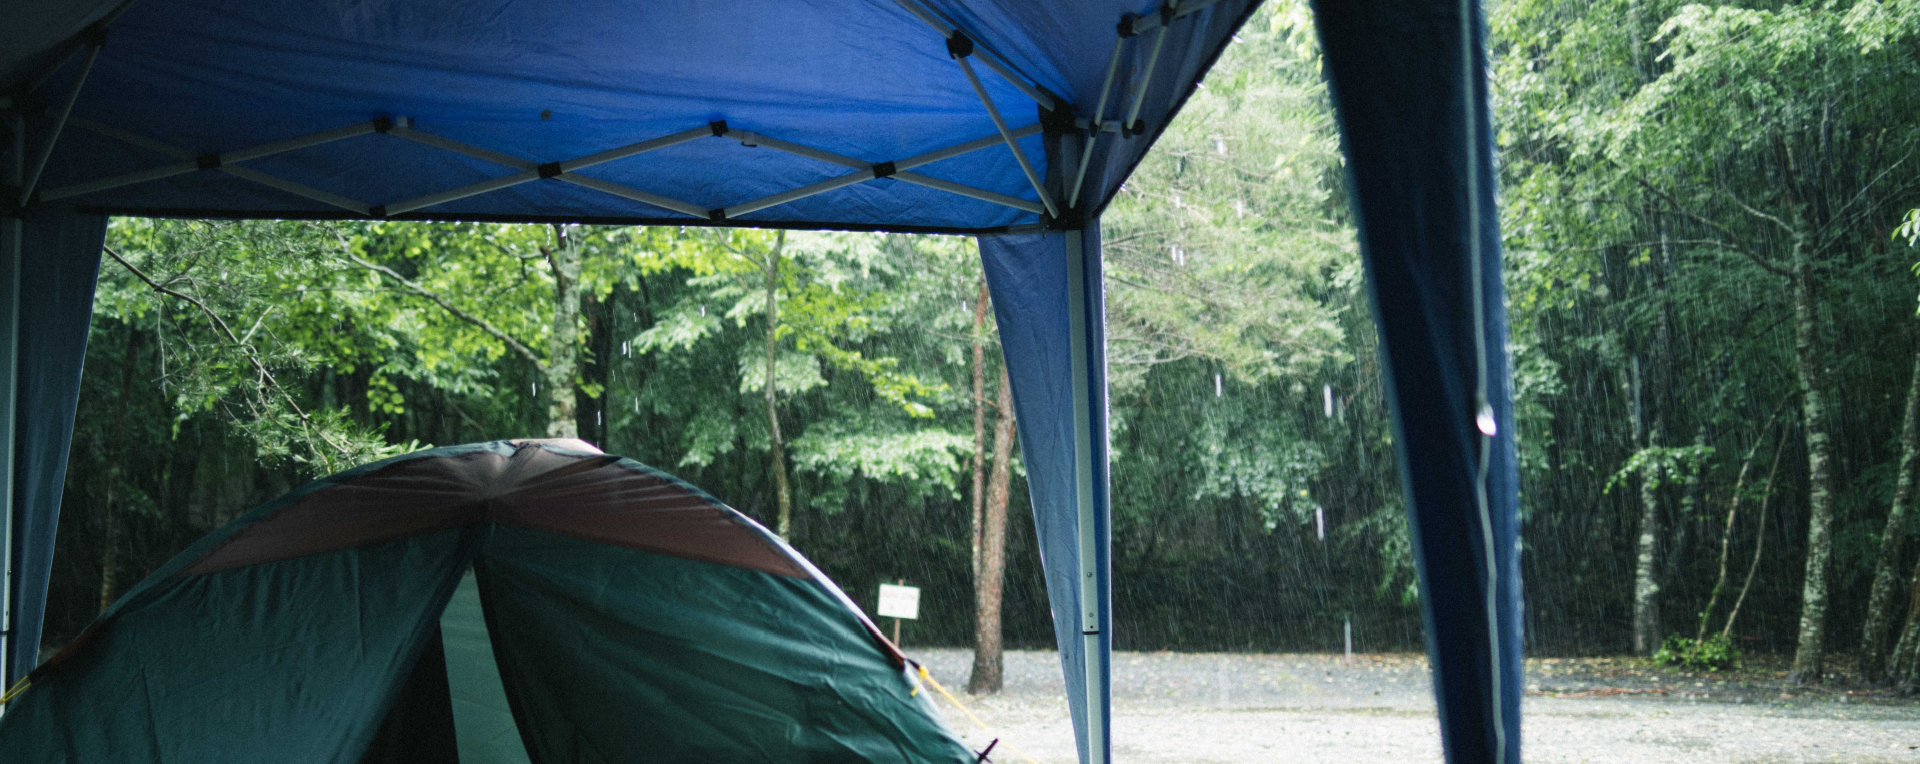 キャンプにタープ タープテント がおすすめな理由とは 他種のタープとの比較 タープテントのことならアイテント Itent